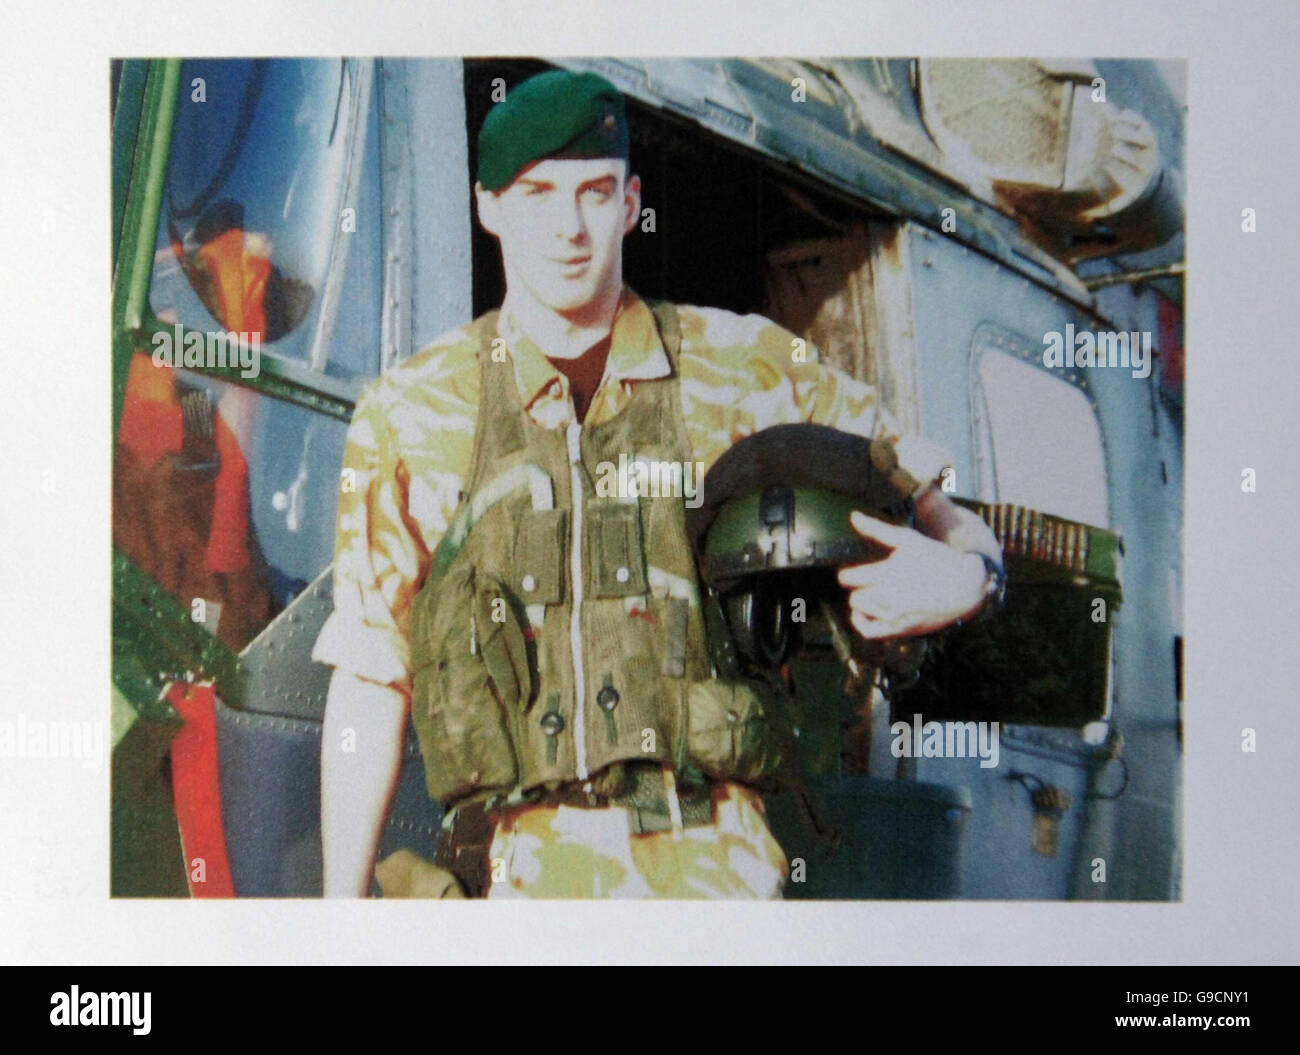 Photo de Royal Marine Paul Collins, mort avec quatre autres dans un accident d'hélicoptère militaire en Irak, tel qu'il apparaît aujourd'hui sur son ordre de service à ses funérailles au Centre d'entraînement Commando, Lympstone, Devon. Banque D'Images